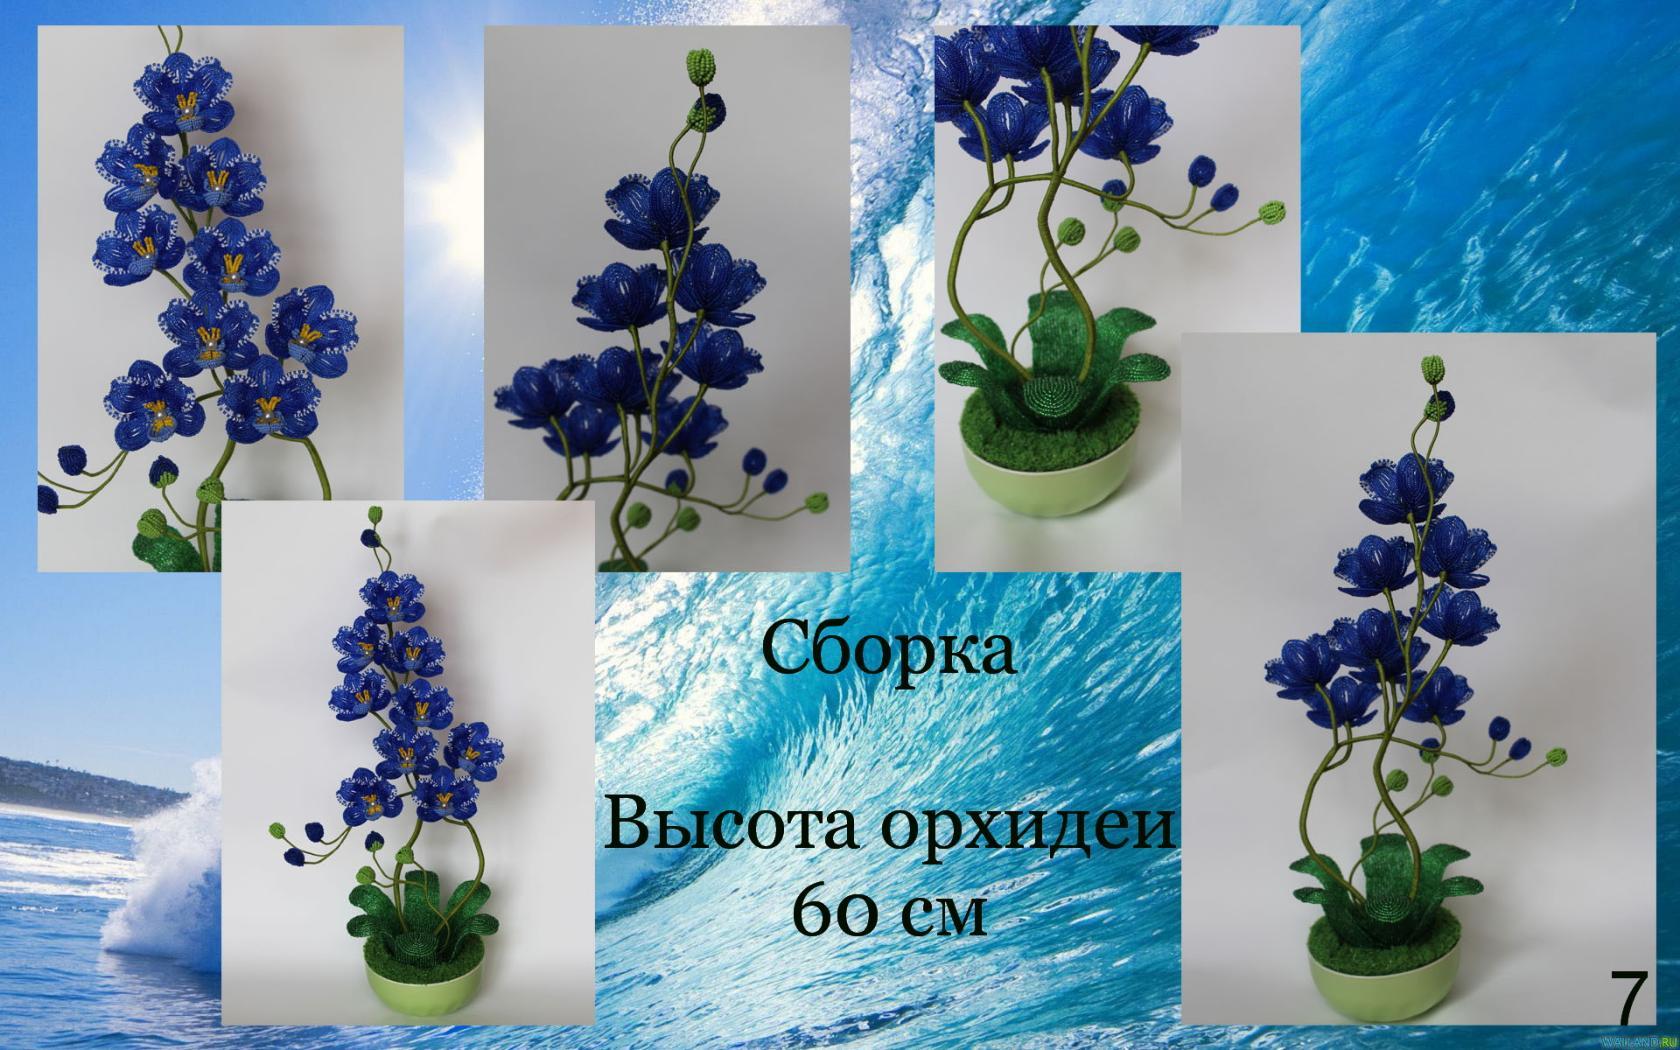 Орхидеи Image?id=874612629663&t=3&plc=WEB&tkn=*PNscr-6qklwD6BDx7fH8OPK1Fpk